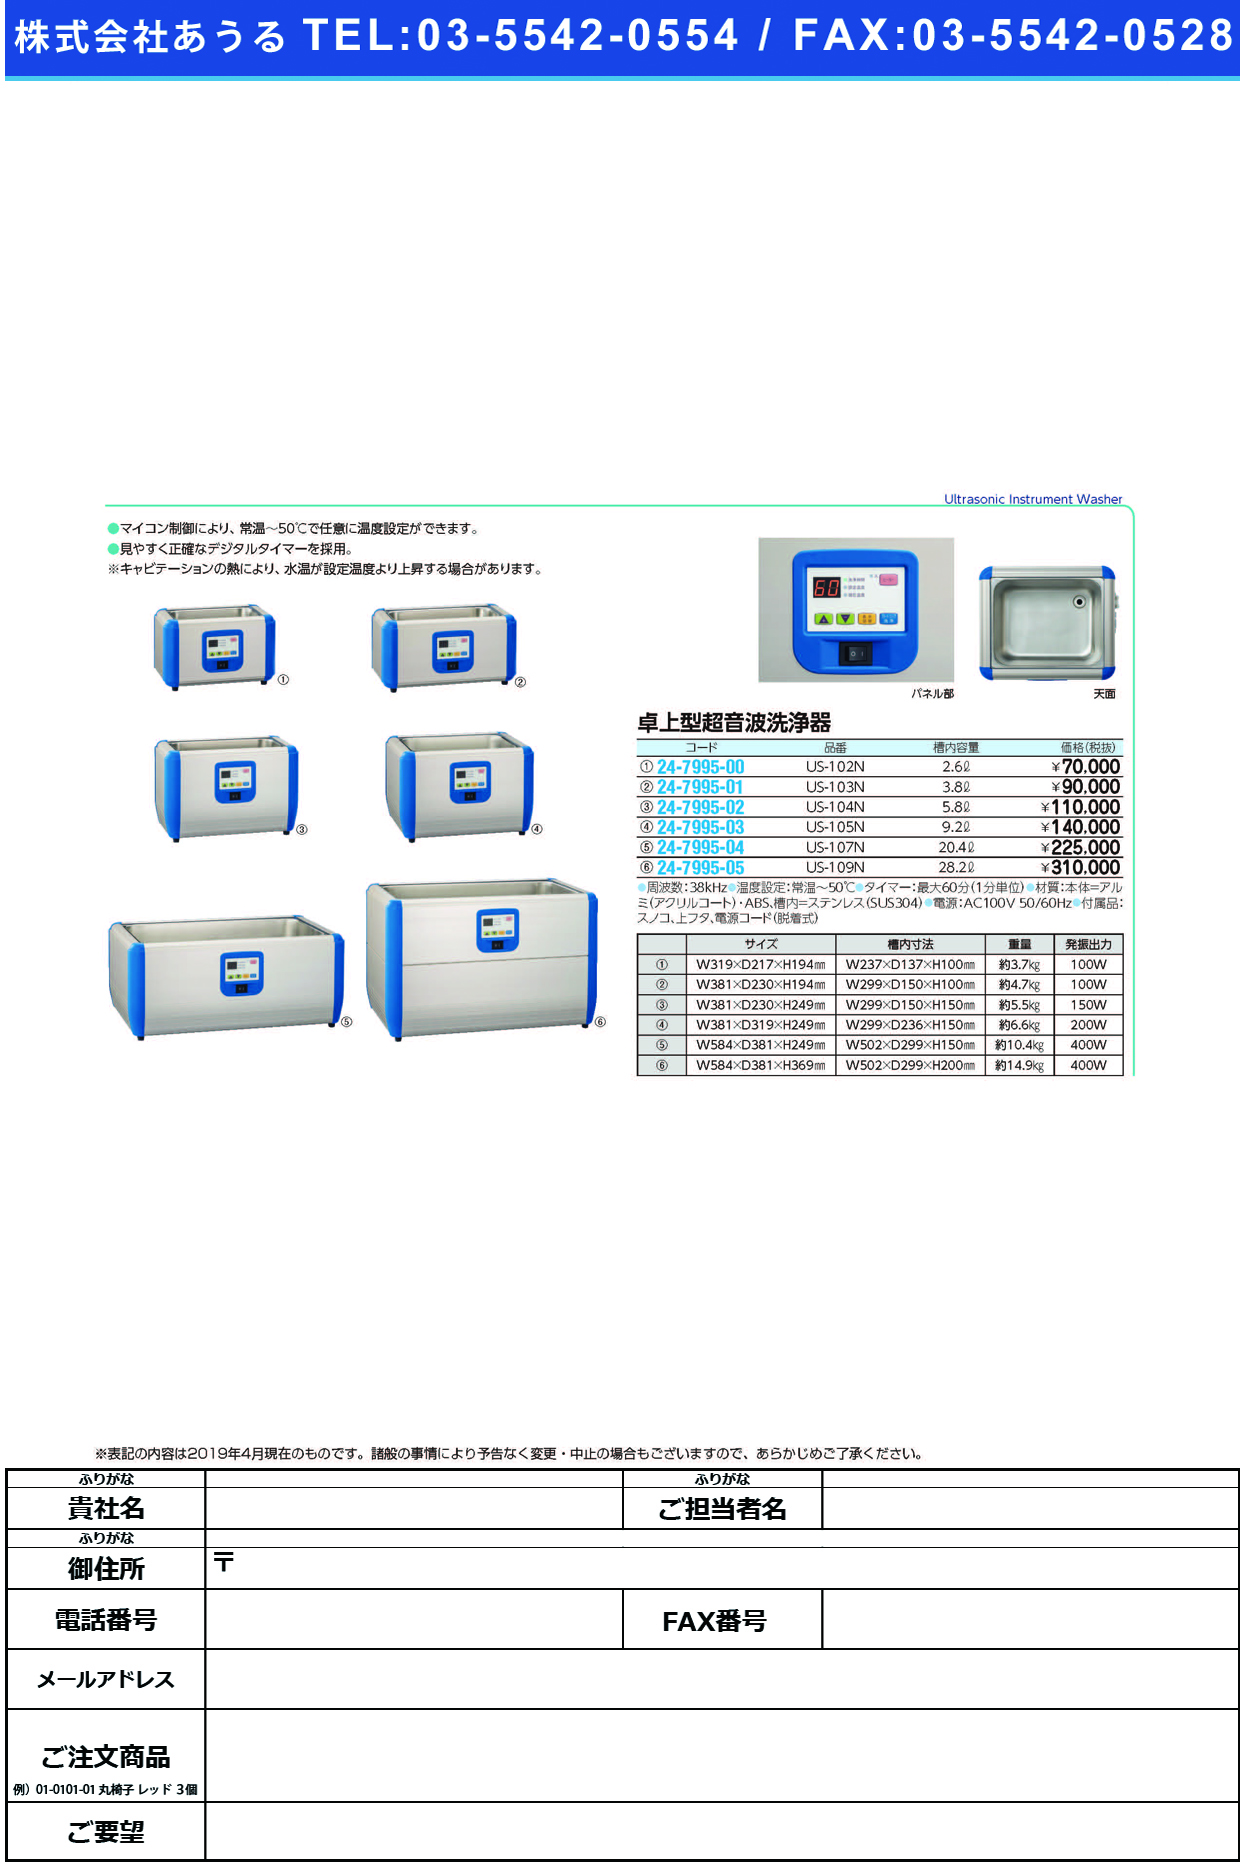 (24-7995-01)卓上型超音波洗浄器US-103N ﾀｸｼﾞｮｳｶﾞﾀﾁｮｳｵﾝﾊﾟｾﾝｼﾞ(三商)【1台単位】【2019年カタログ商品】